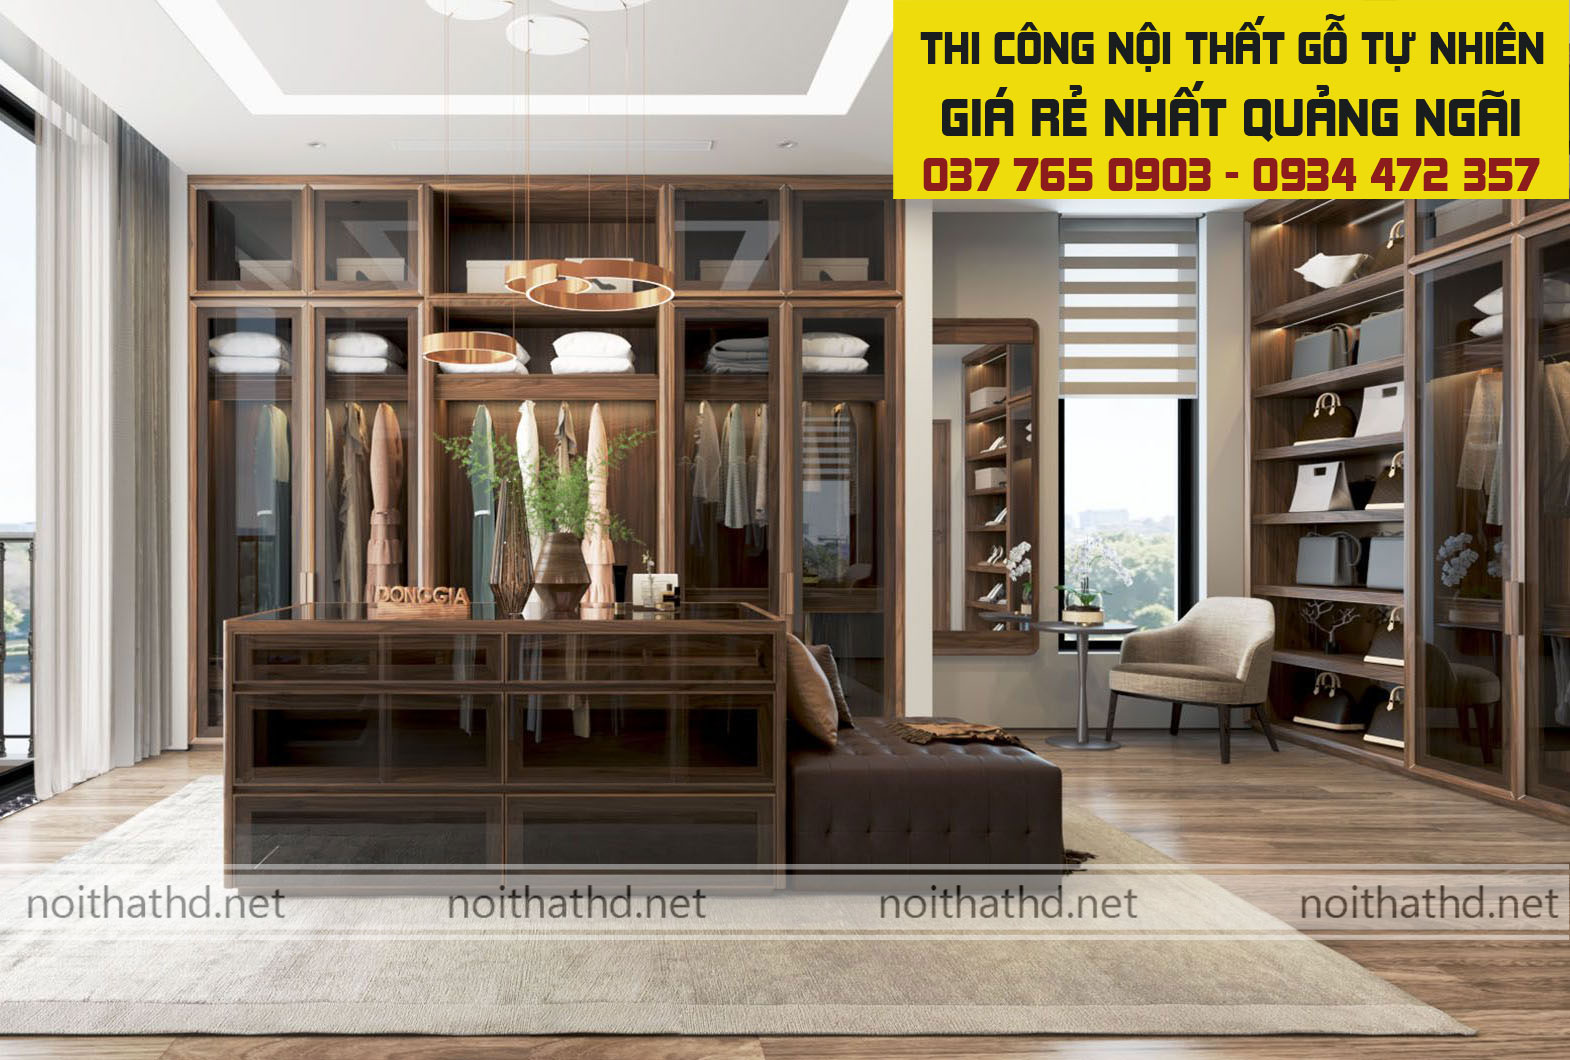 Hơn 50 mẫu thiết kế thi công nội thất gỗ tự nhiên đẹp tại Quảng Ngãi 2021